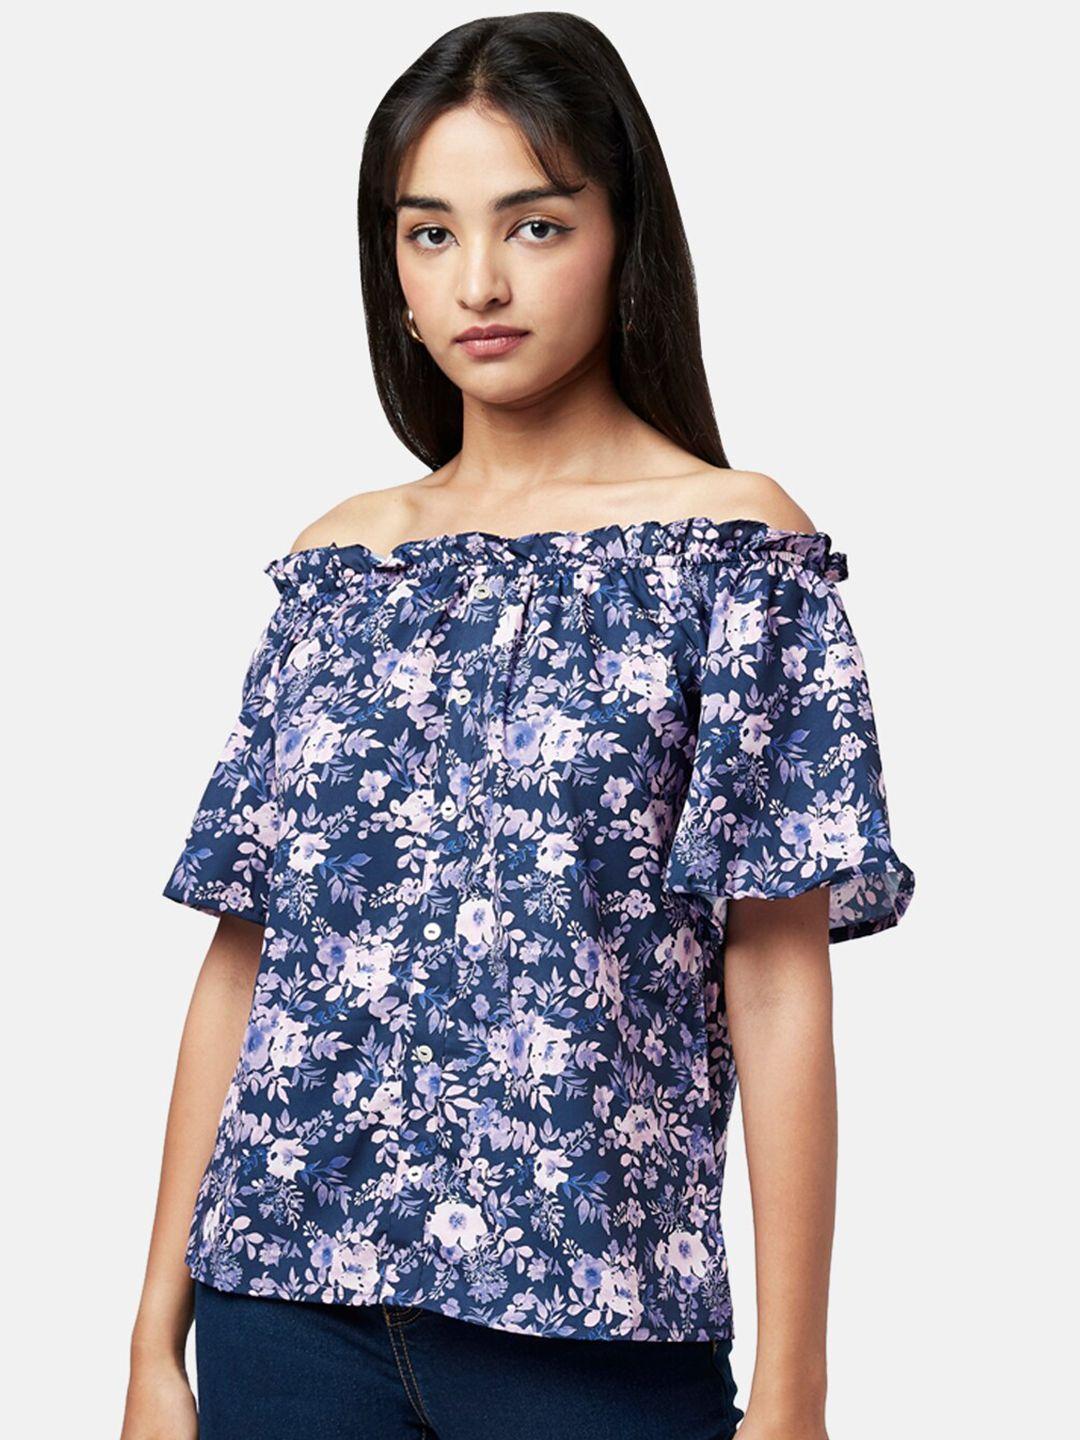 yu by pantaloons navy blue floral print off-shoulder bardot top